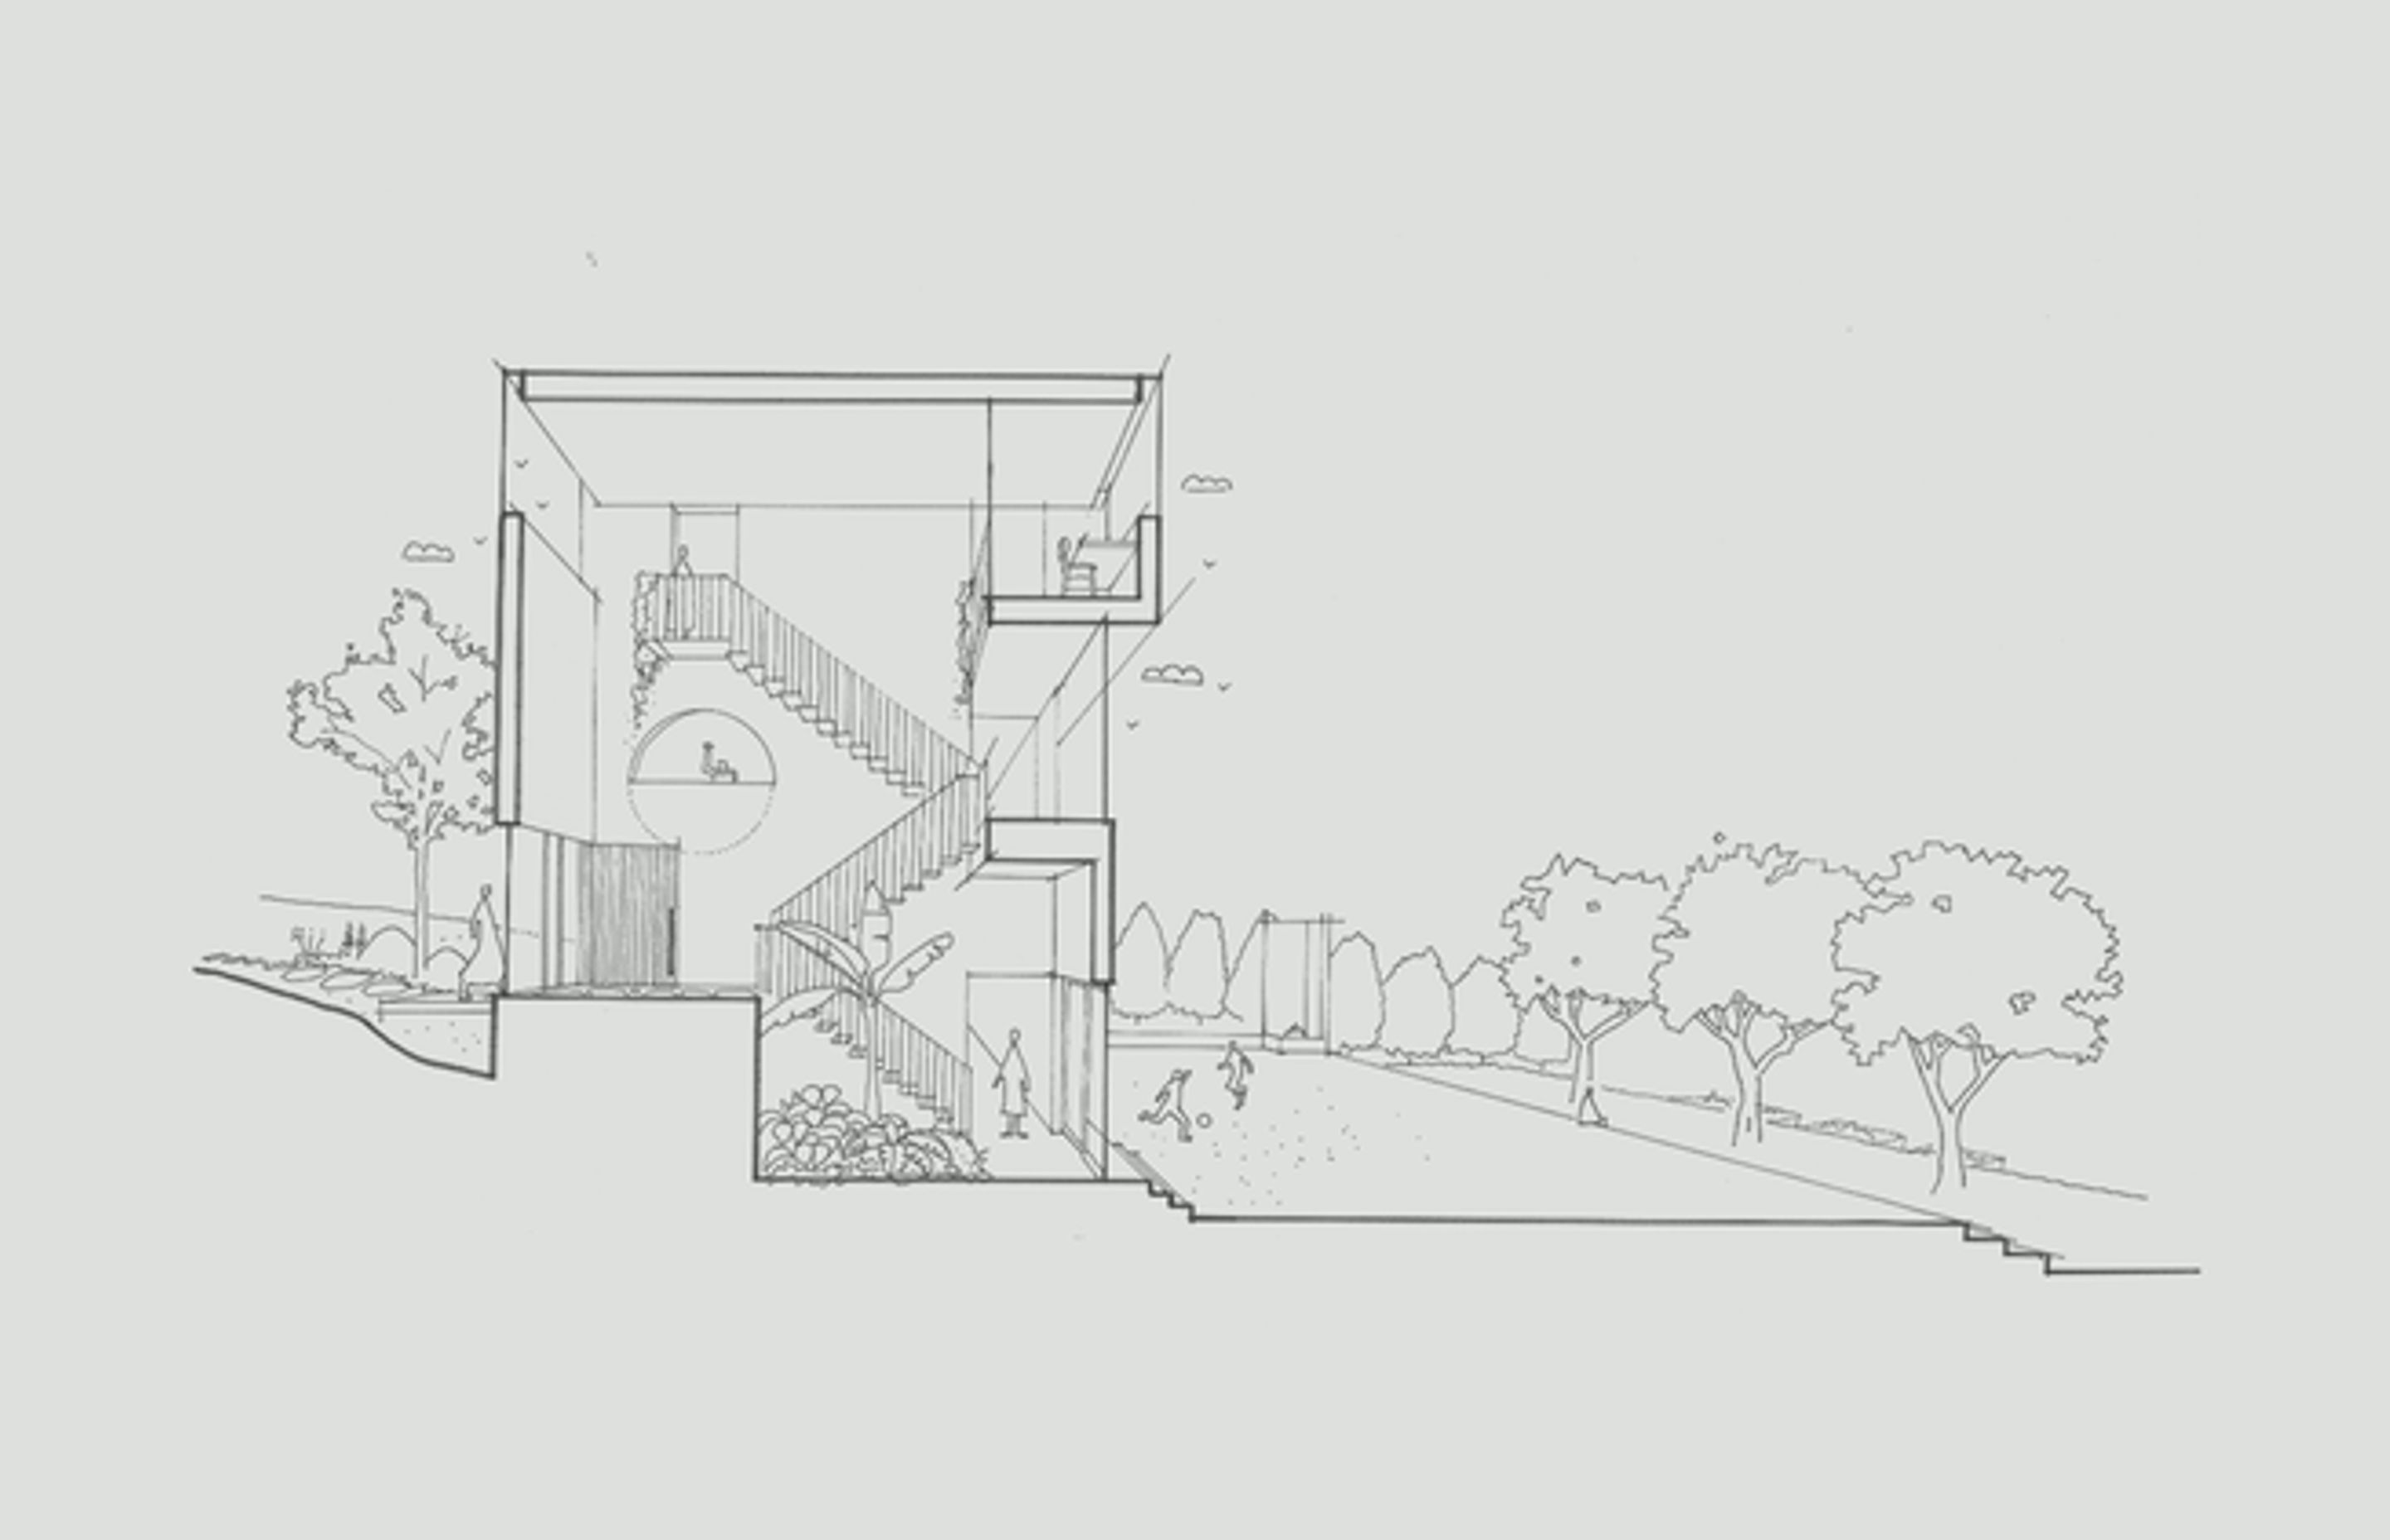 An early concept sketch exploring the open air atrium